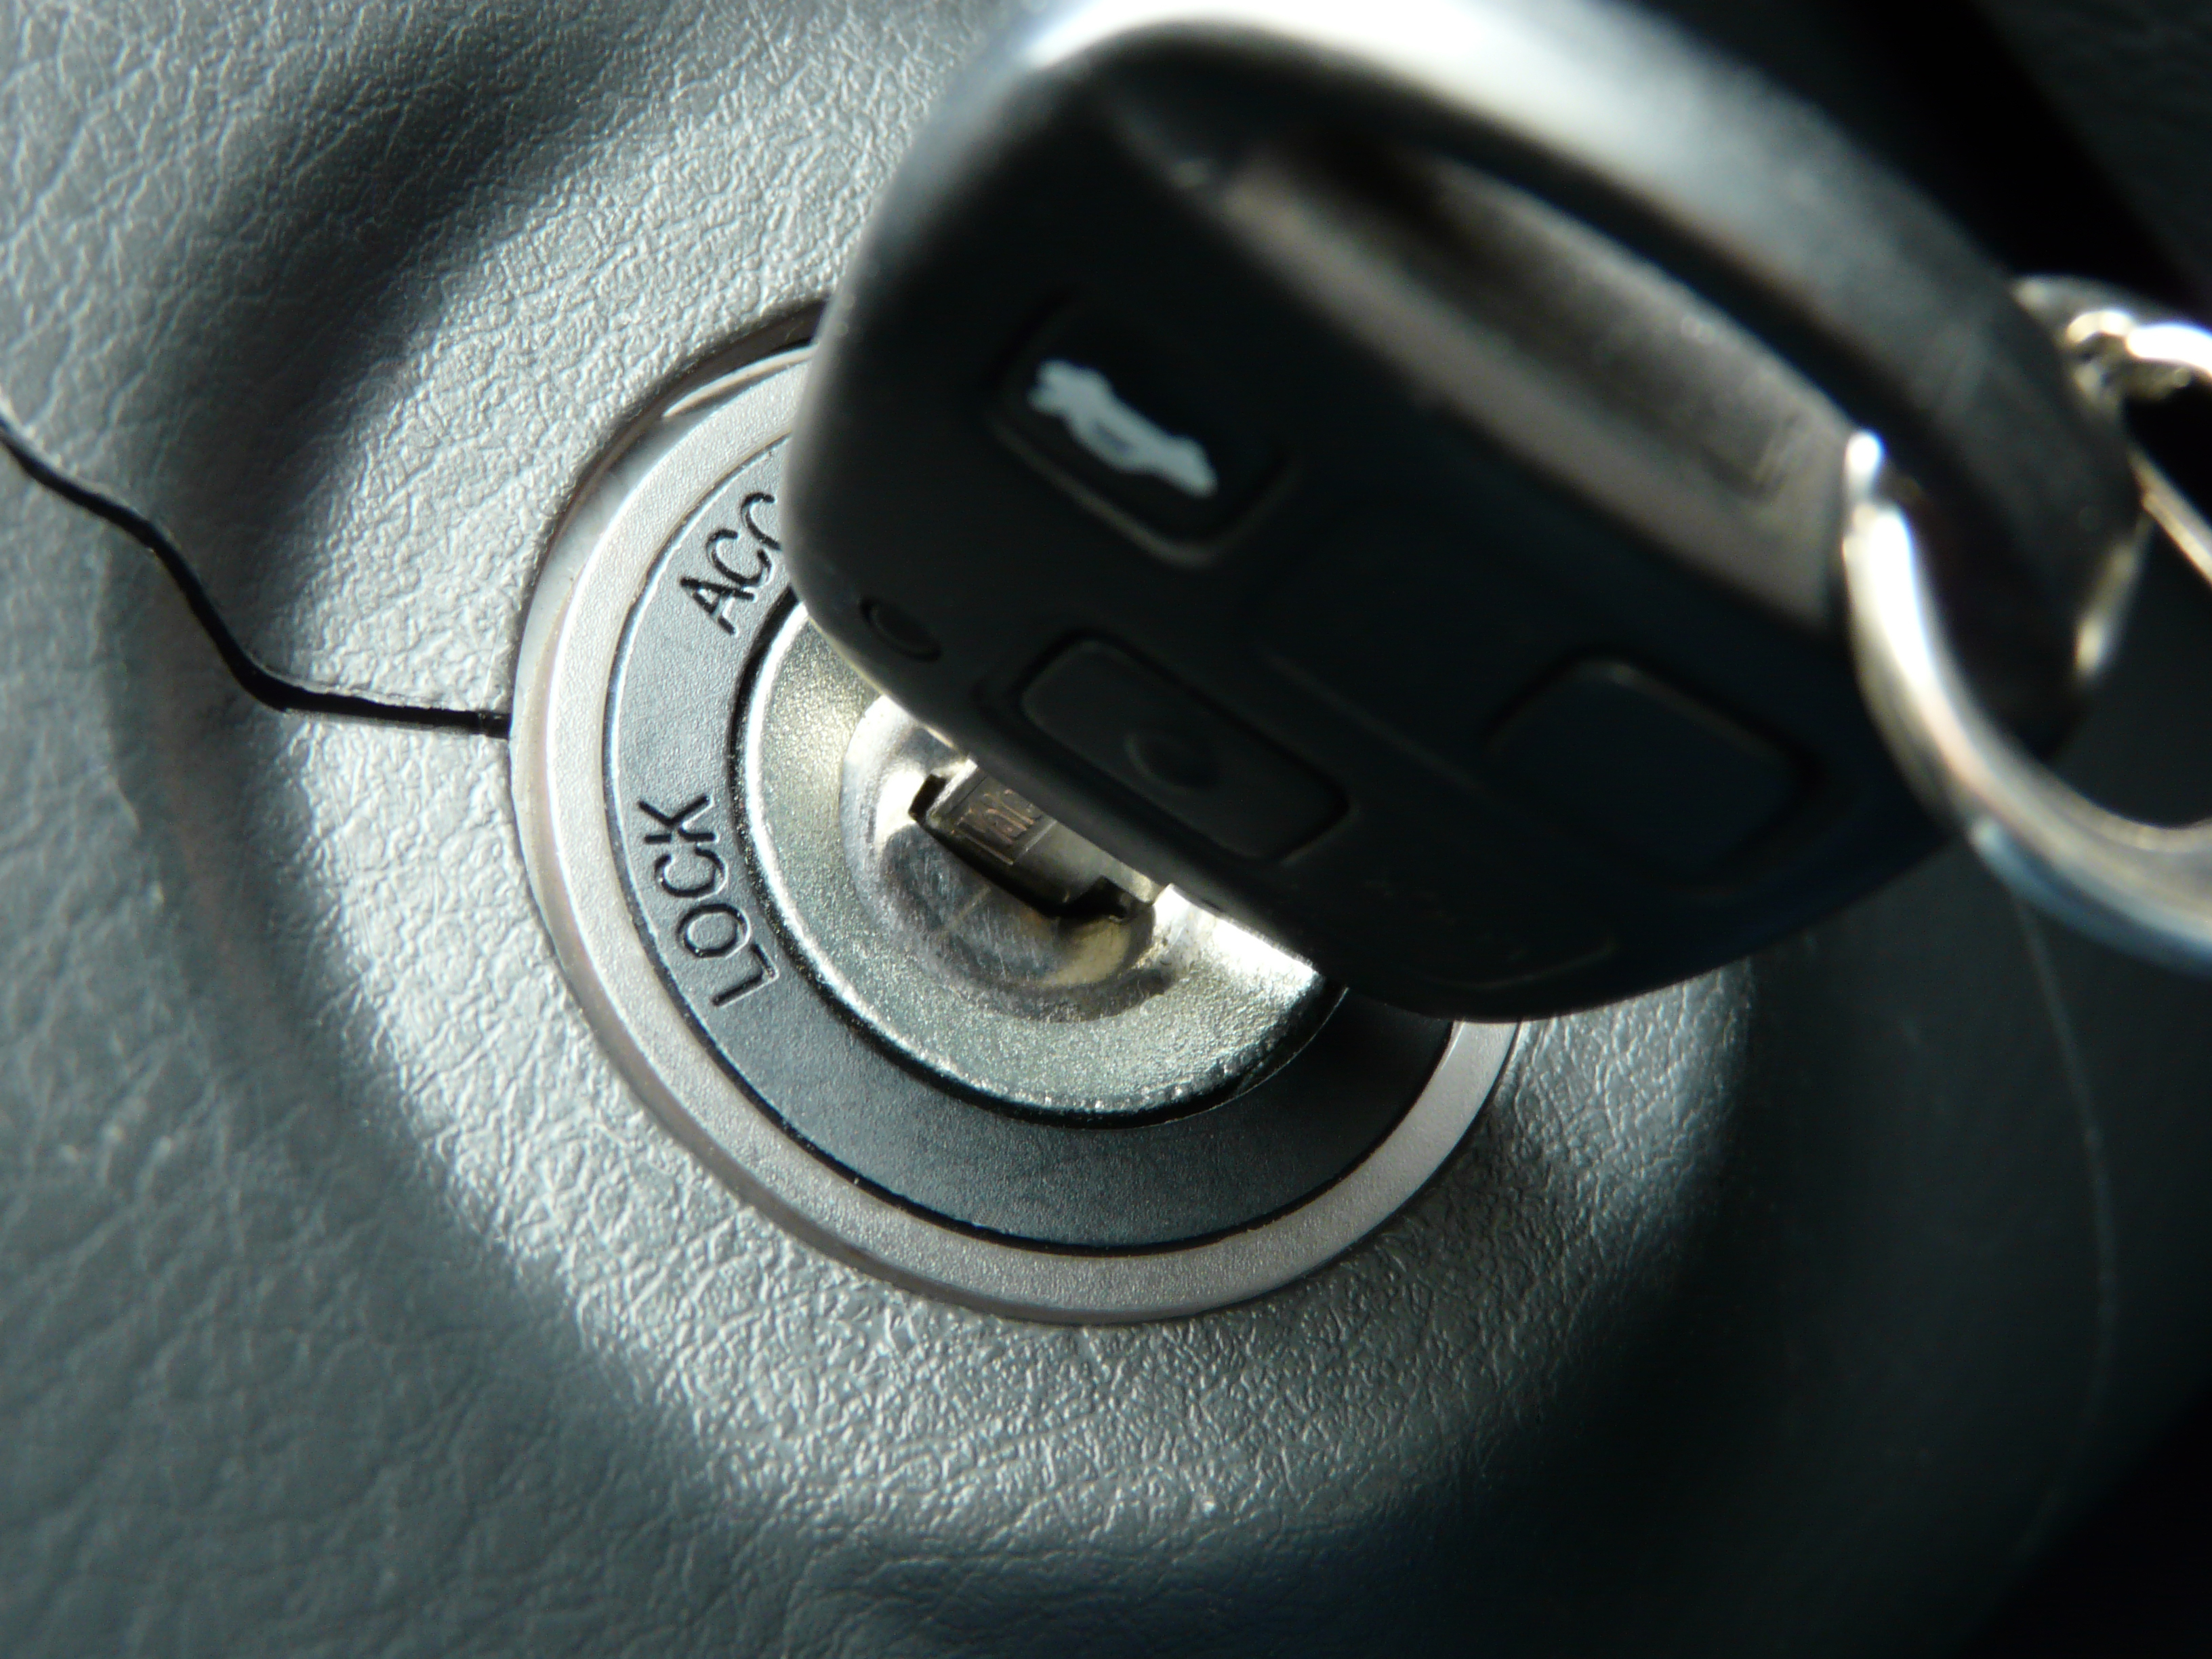 locked-keys-in-car-capitol-hill-wa